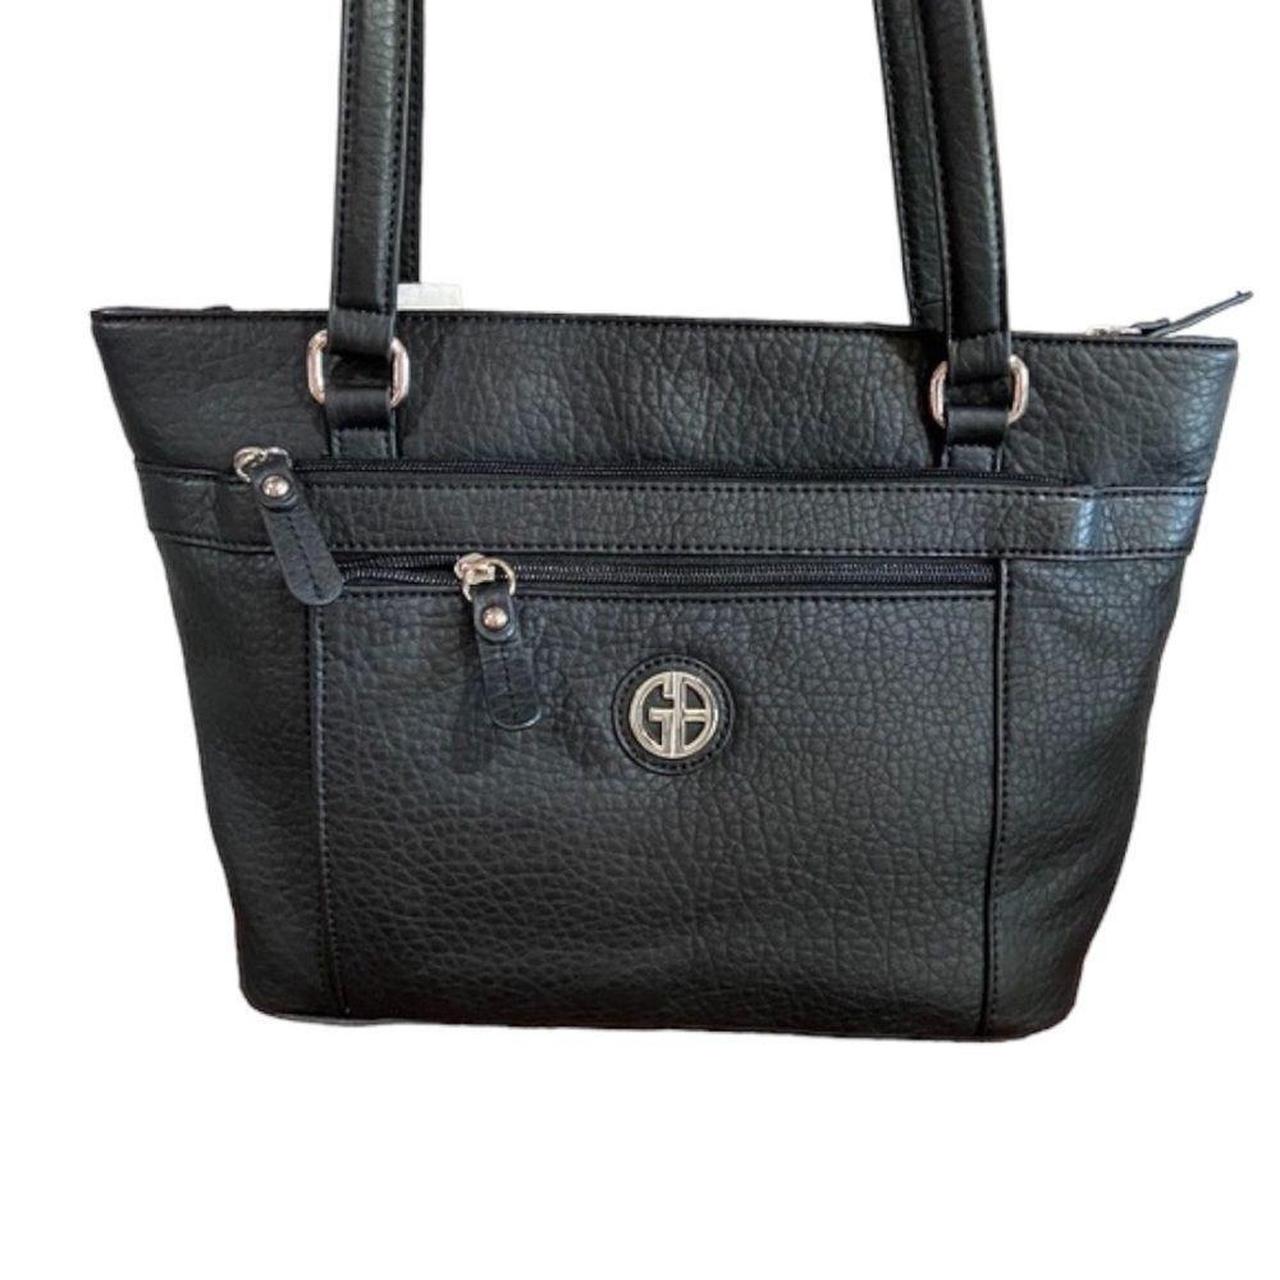 Giani Bernini Women's Bag - Black